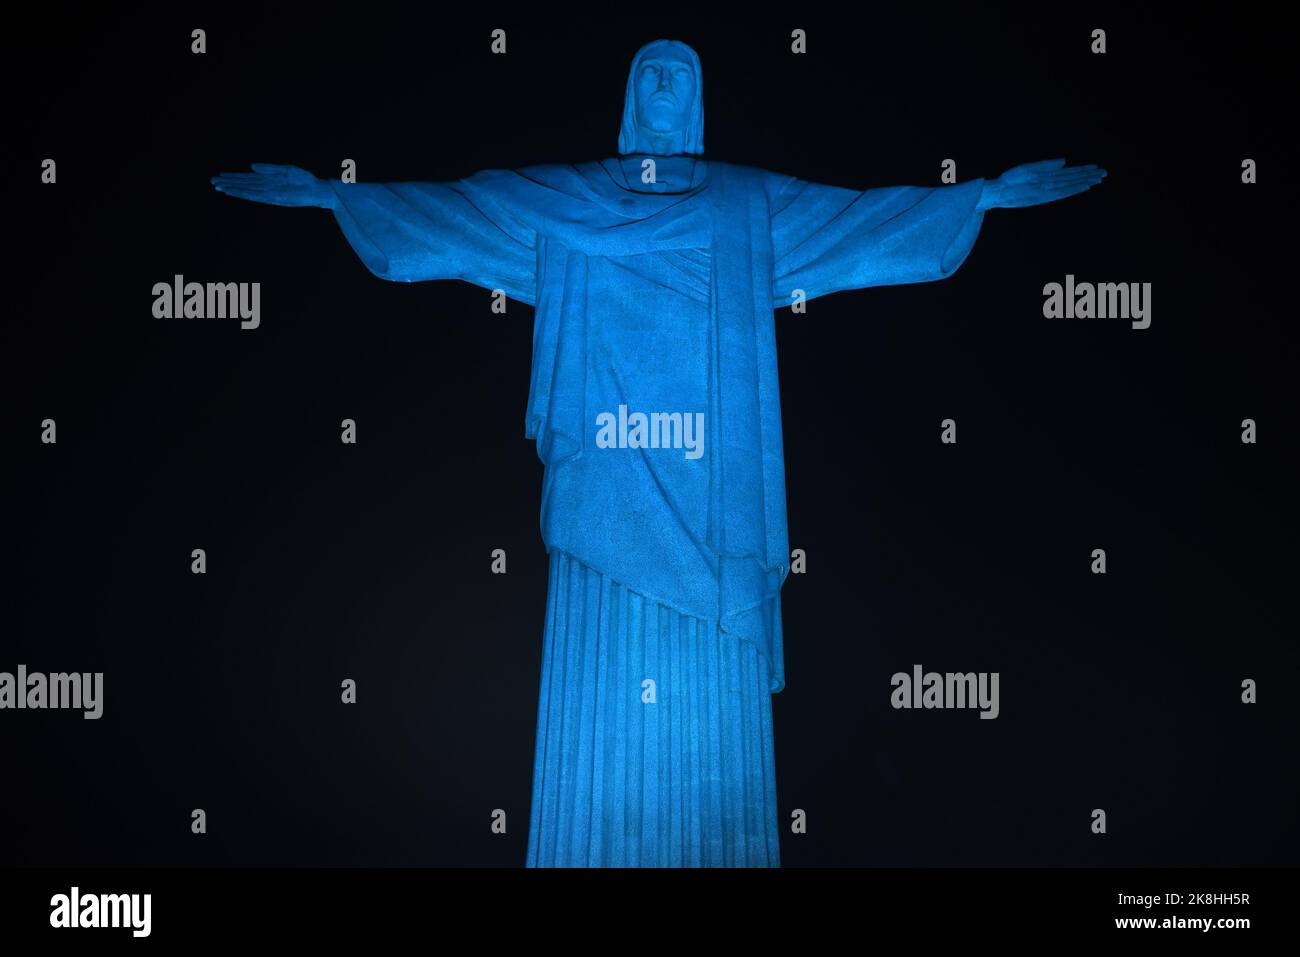 Christus, der Erlöser, wurde in der Nacht dieses Sonntags (16) zur Feier des Welternährungstages in der südlichen Zone von Rio de Jane in hellblau beleuchtet Stockfoto